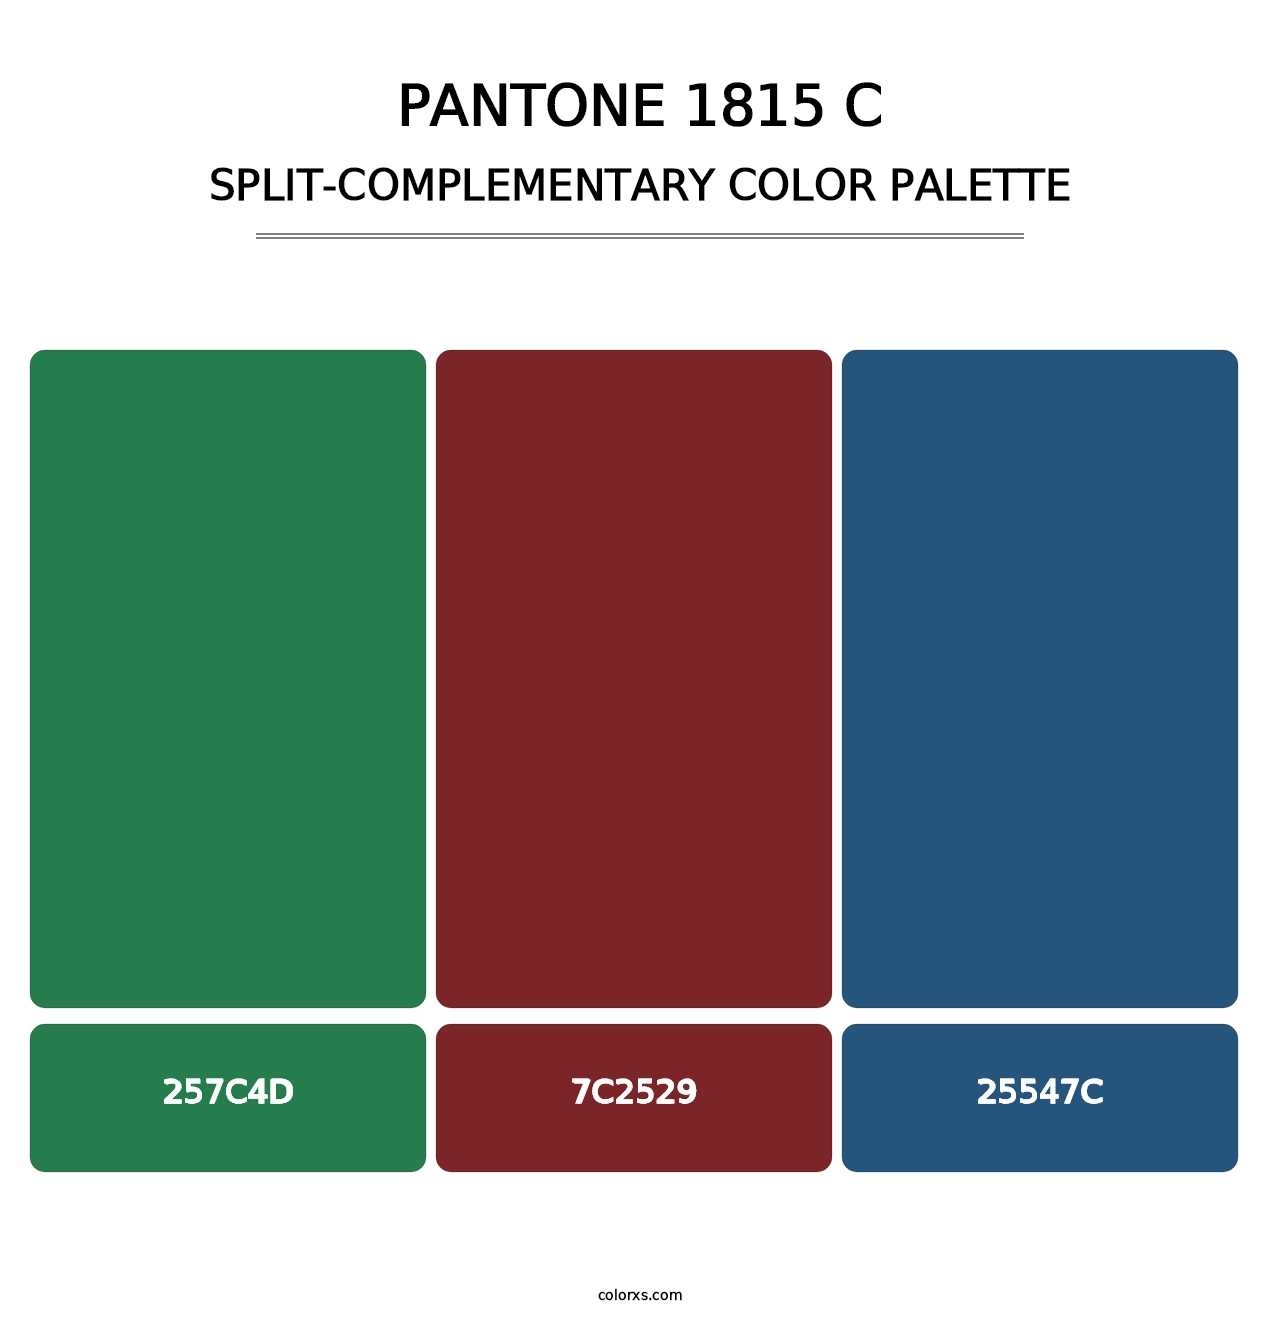 PANTONE 1815 C - Split-Complementary Color Palette